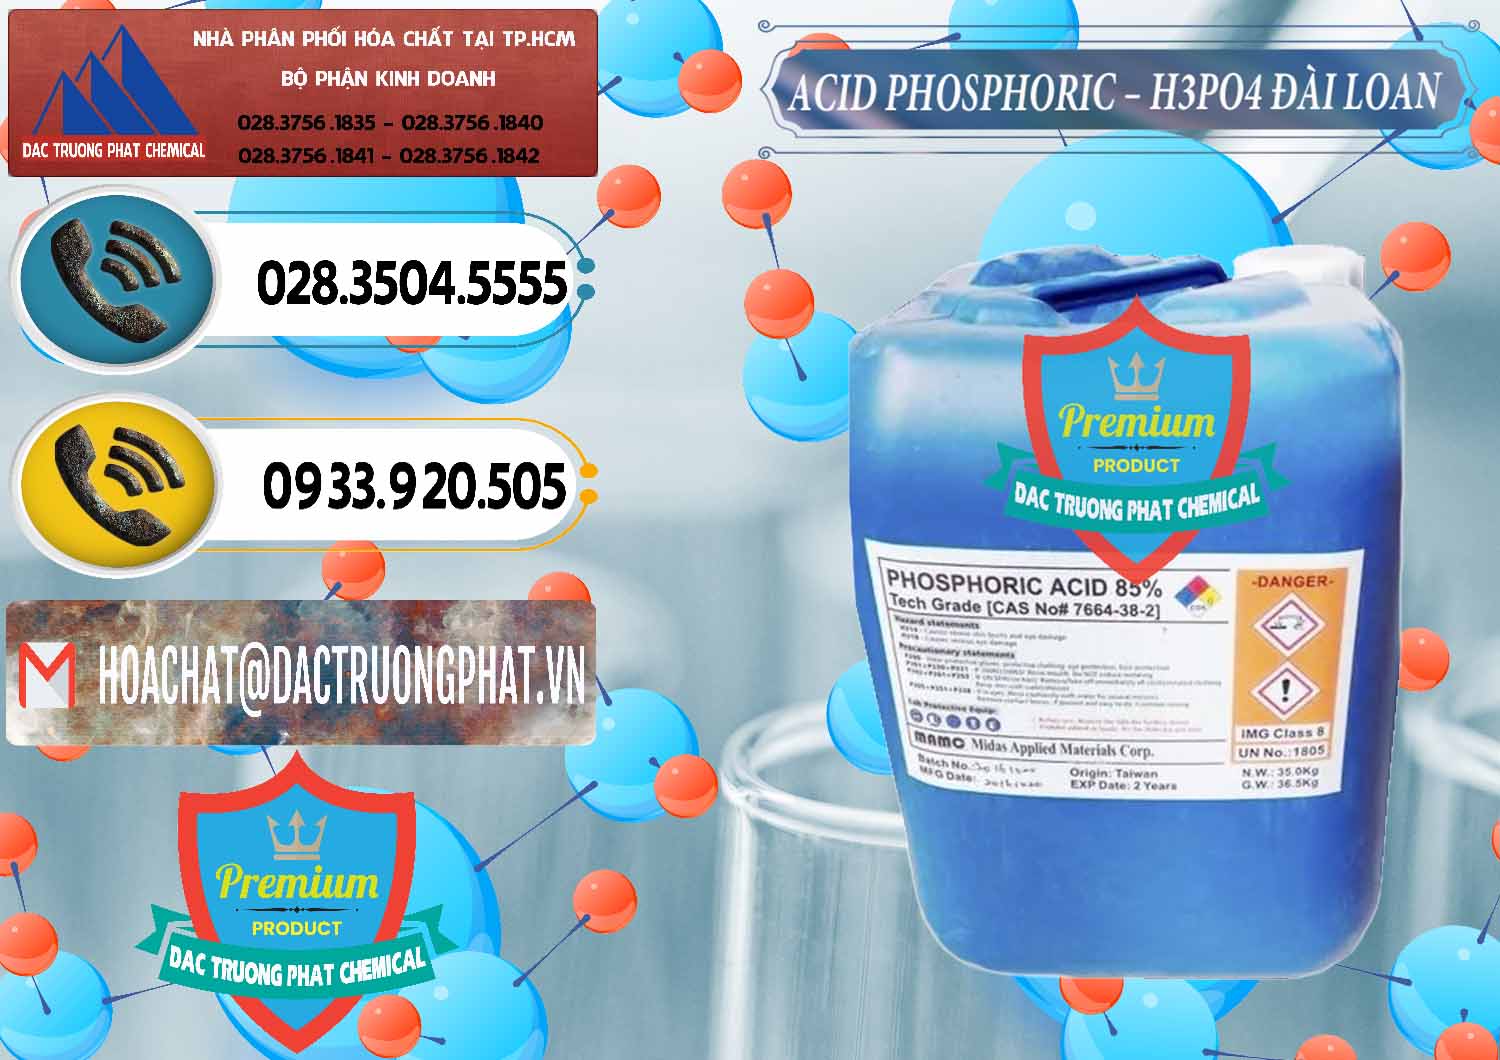 Công ty bán - cung ứng Axit Phosphoric - Acid Phosphoric H3PO4 85% Đài Loan Taiwan - 0351 - Chuyên cung cấp và phân phối hóa chất tại TP.HCM - hoachatdetnhuom.vn